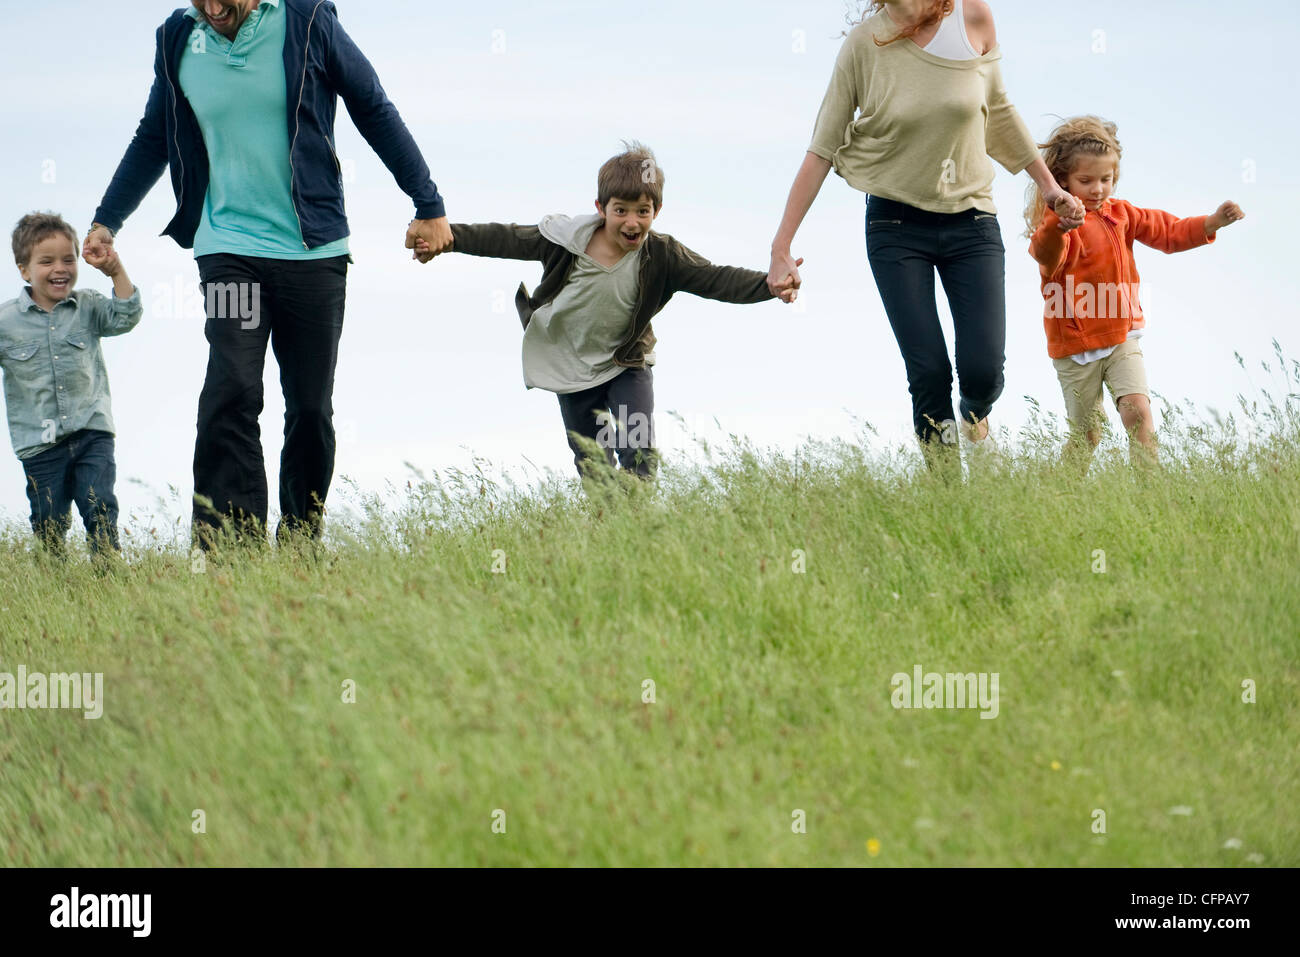 Familia correr juntos de la mano en el campo Foto de stock